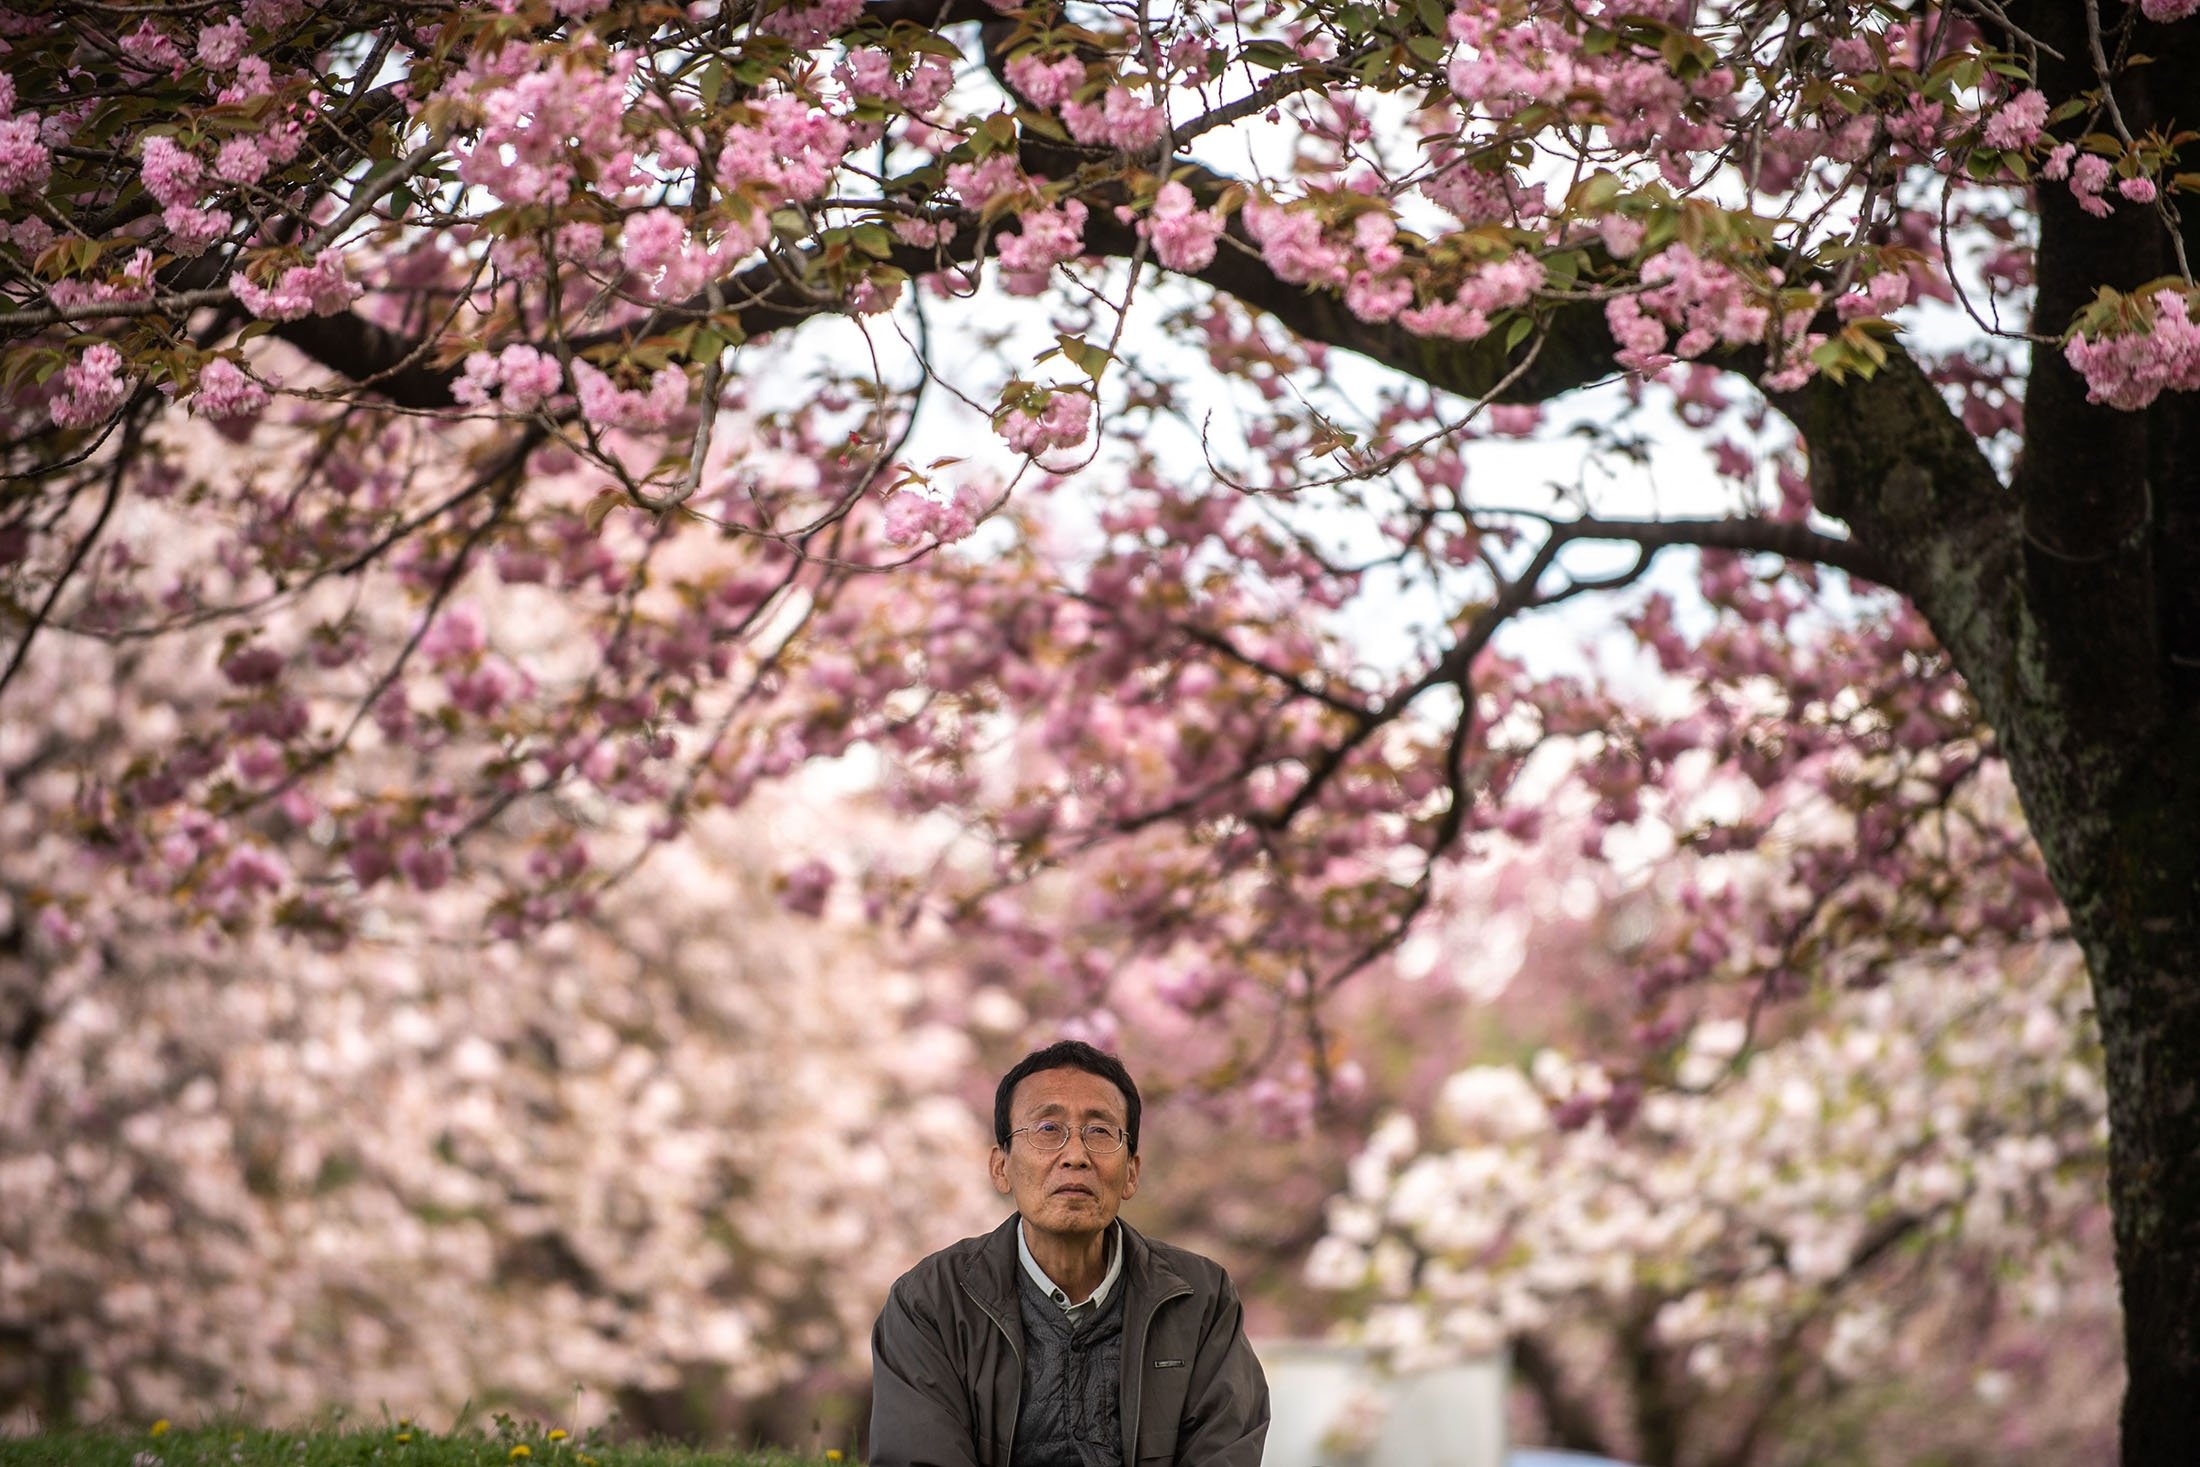 Hideaki Tanaka, directeur de la Flower Association of Japan, posant pour une photo sous des cerisiers en fleurs dans une ferme de Yuki, dans le nord-est de la préfecture d'Ibaraki, au Japon, le 16 avril 2022. (Photo AFP)